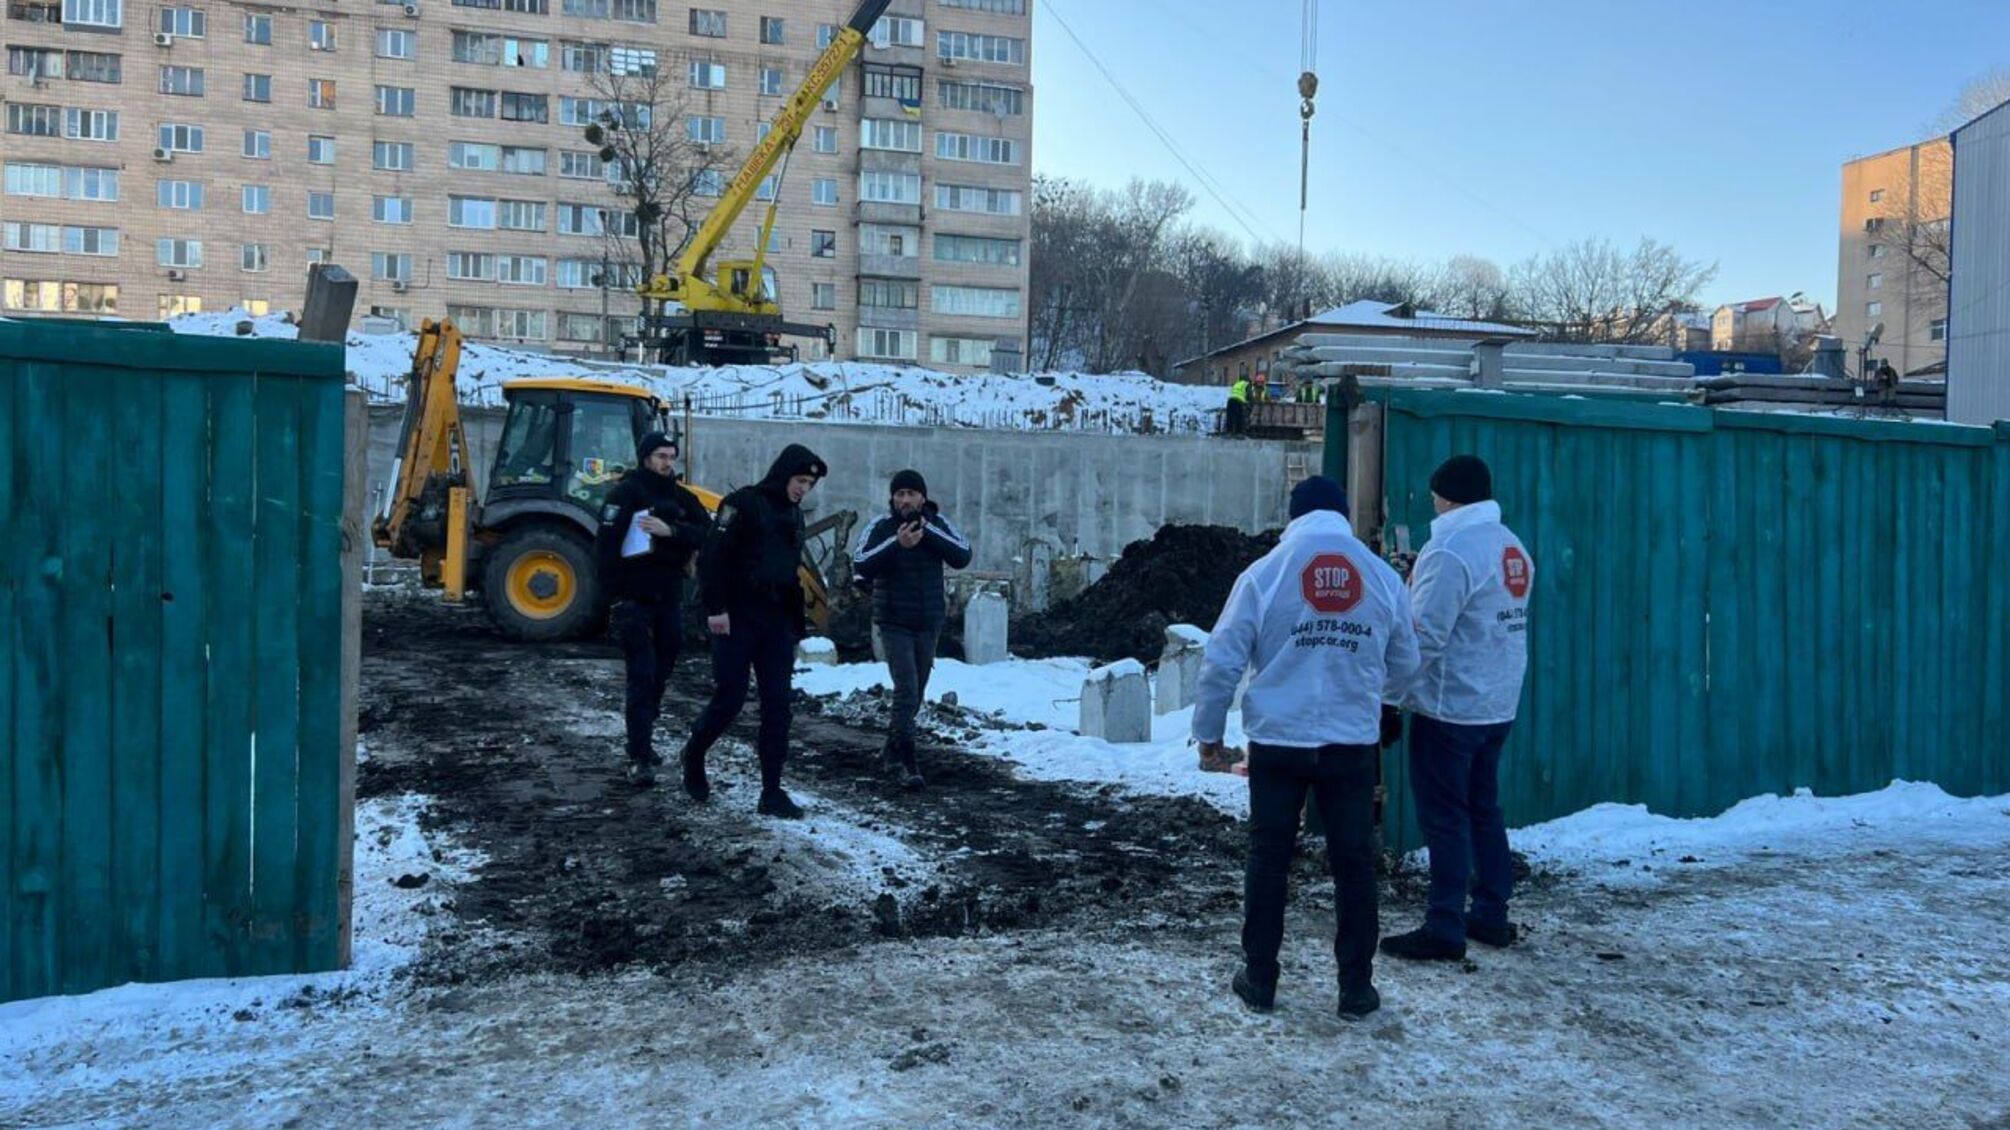 Несмотря на санкции: фирма Ермолаева застраивает Протасов Яр – полиция зафиксировала незаконные работы